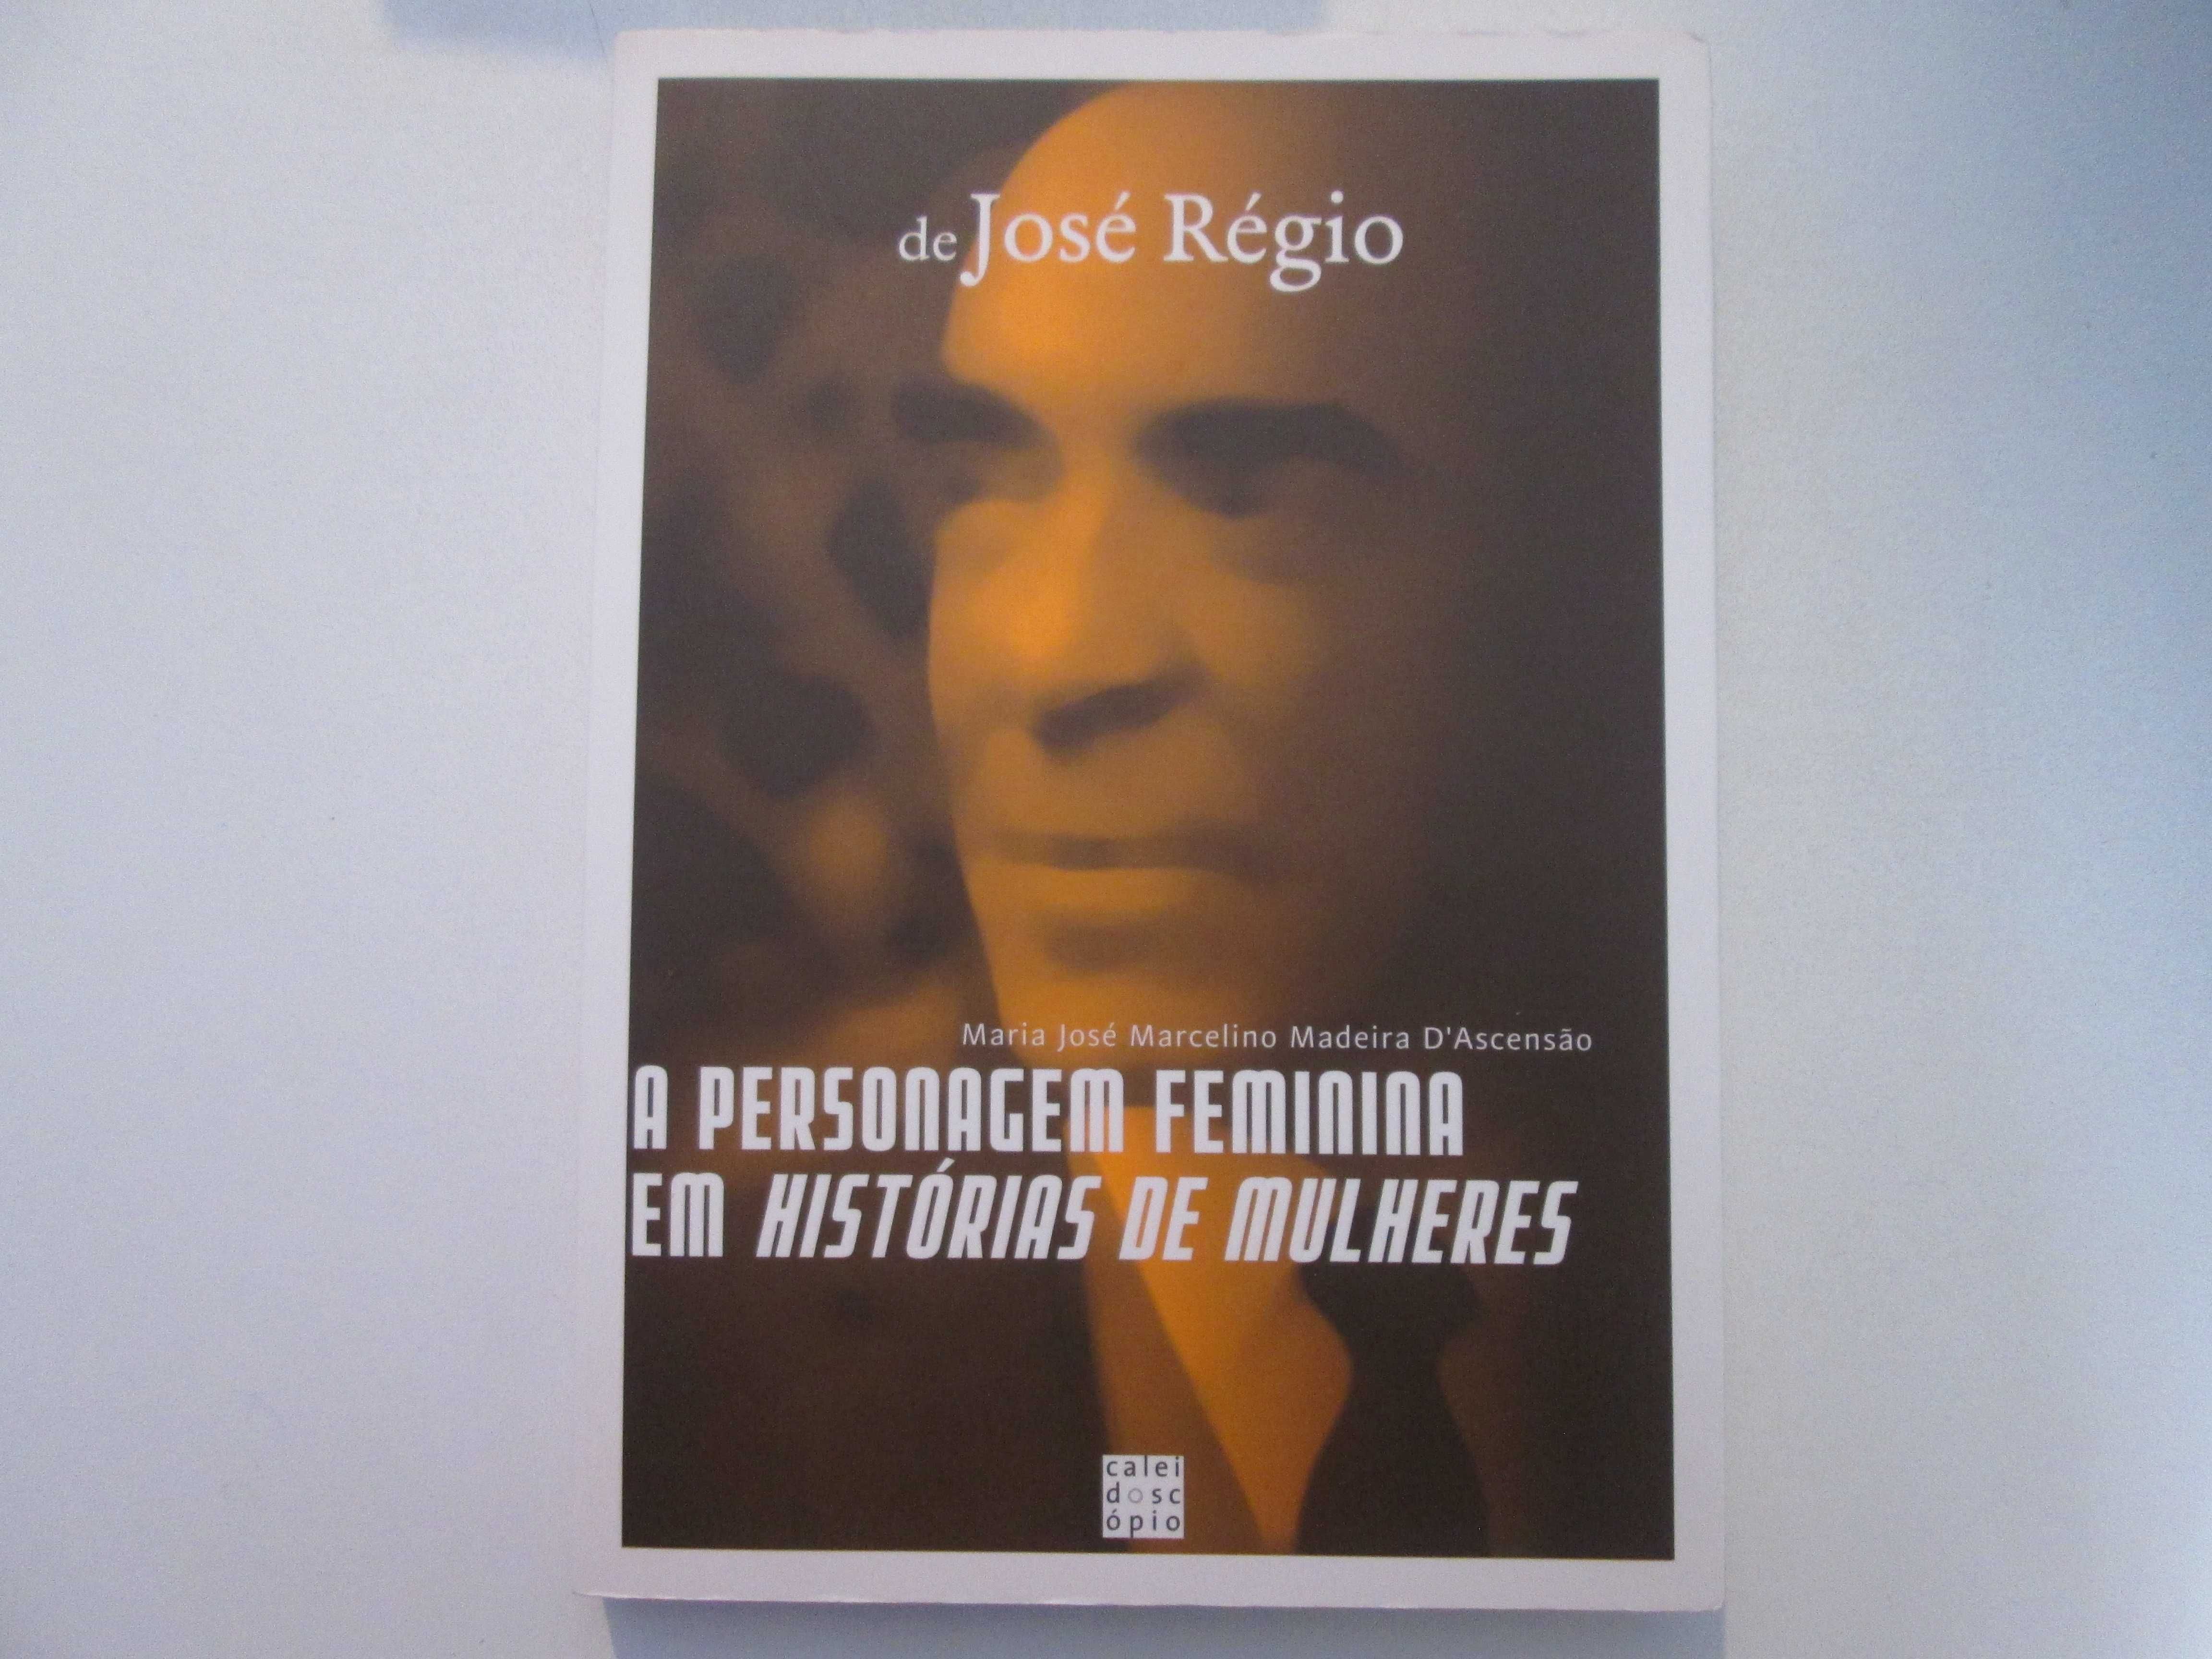 A personagem feminina em histórias de mulheres de José Régio